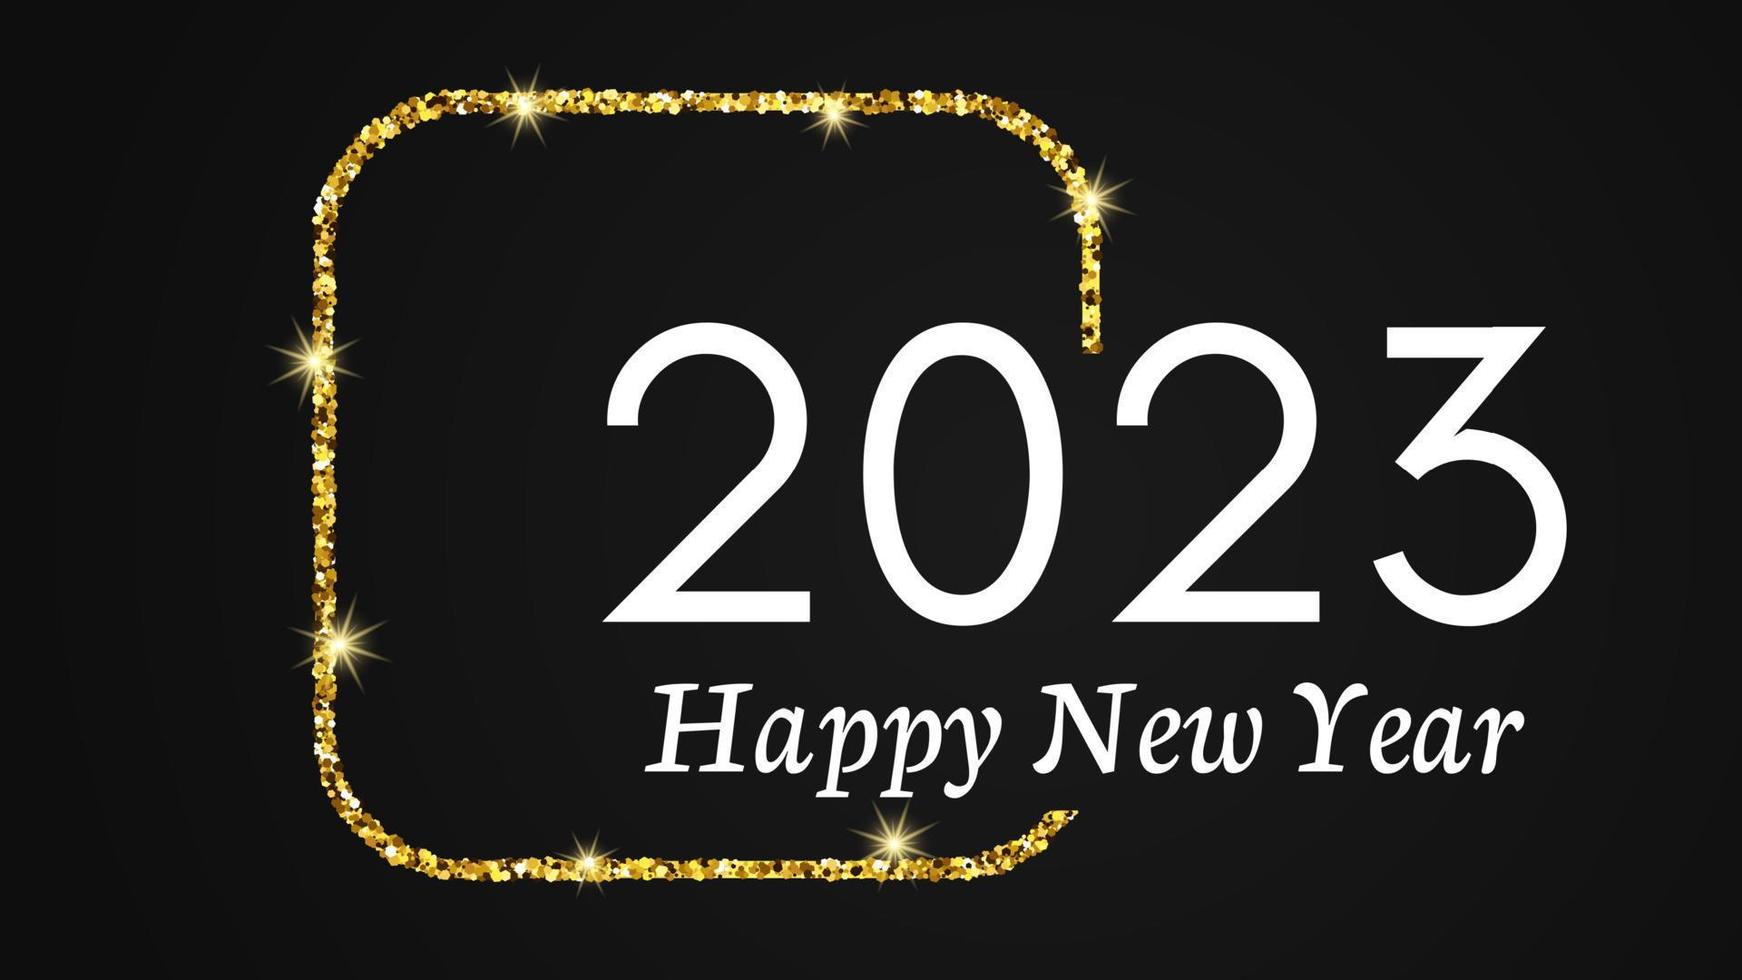 Fondo de feliz año nuevo 2023. inscripción blanca en un cuadrado redondeado de brillo dorado para tarjetas de felicitación navideñas, volantes o carteles. ilustración vectorial vector